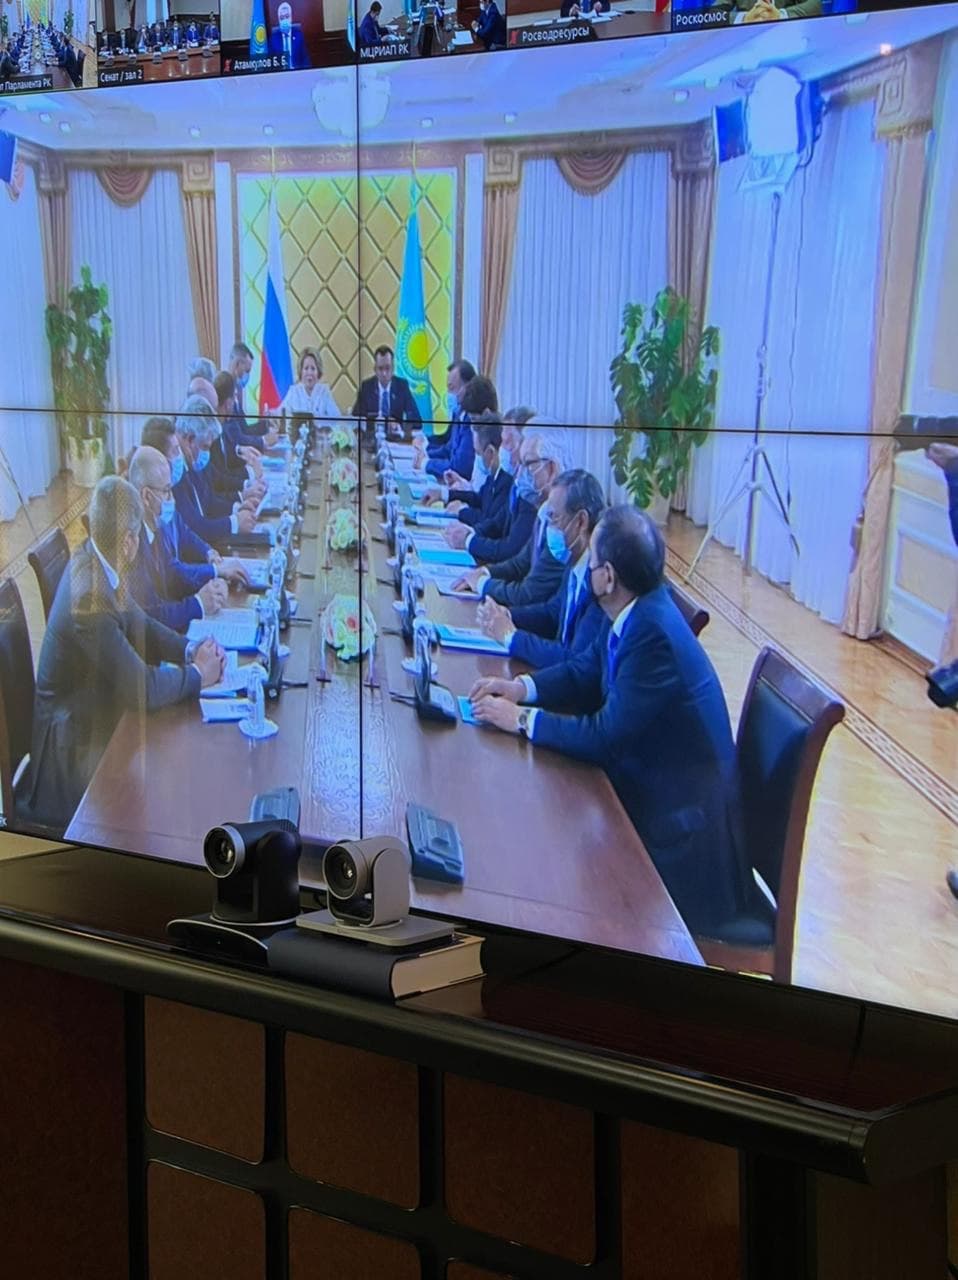 Казахстан и Россия обсудили проблемные вопросы трансграничной реки Урал